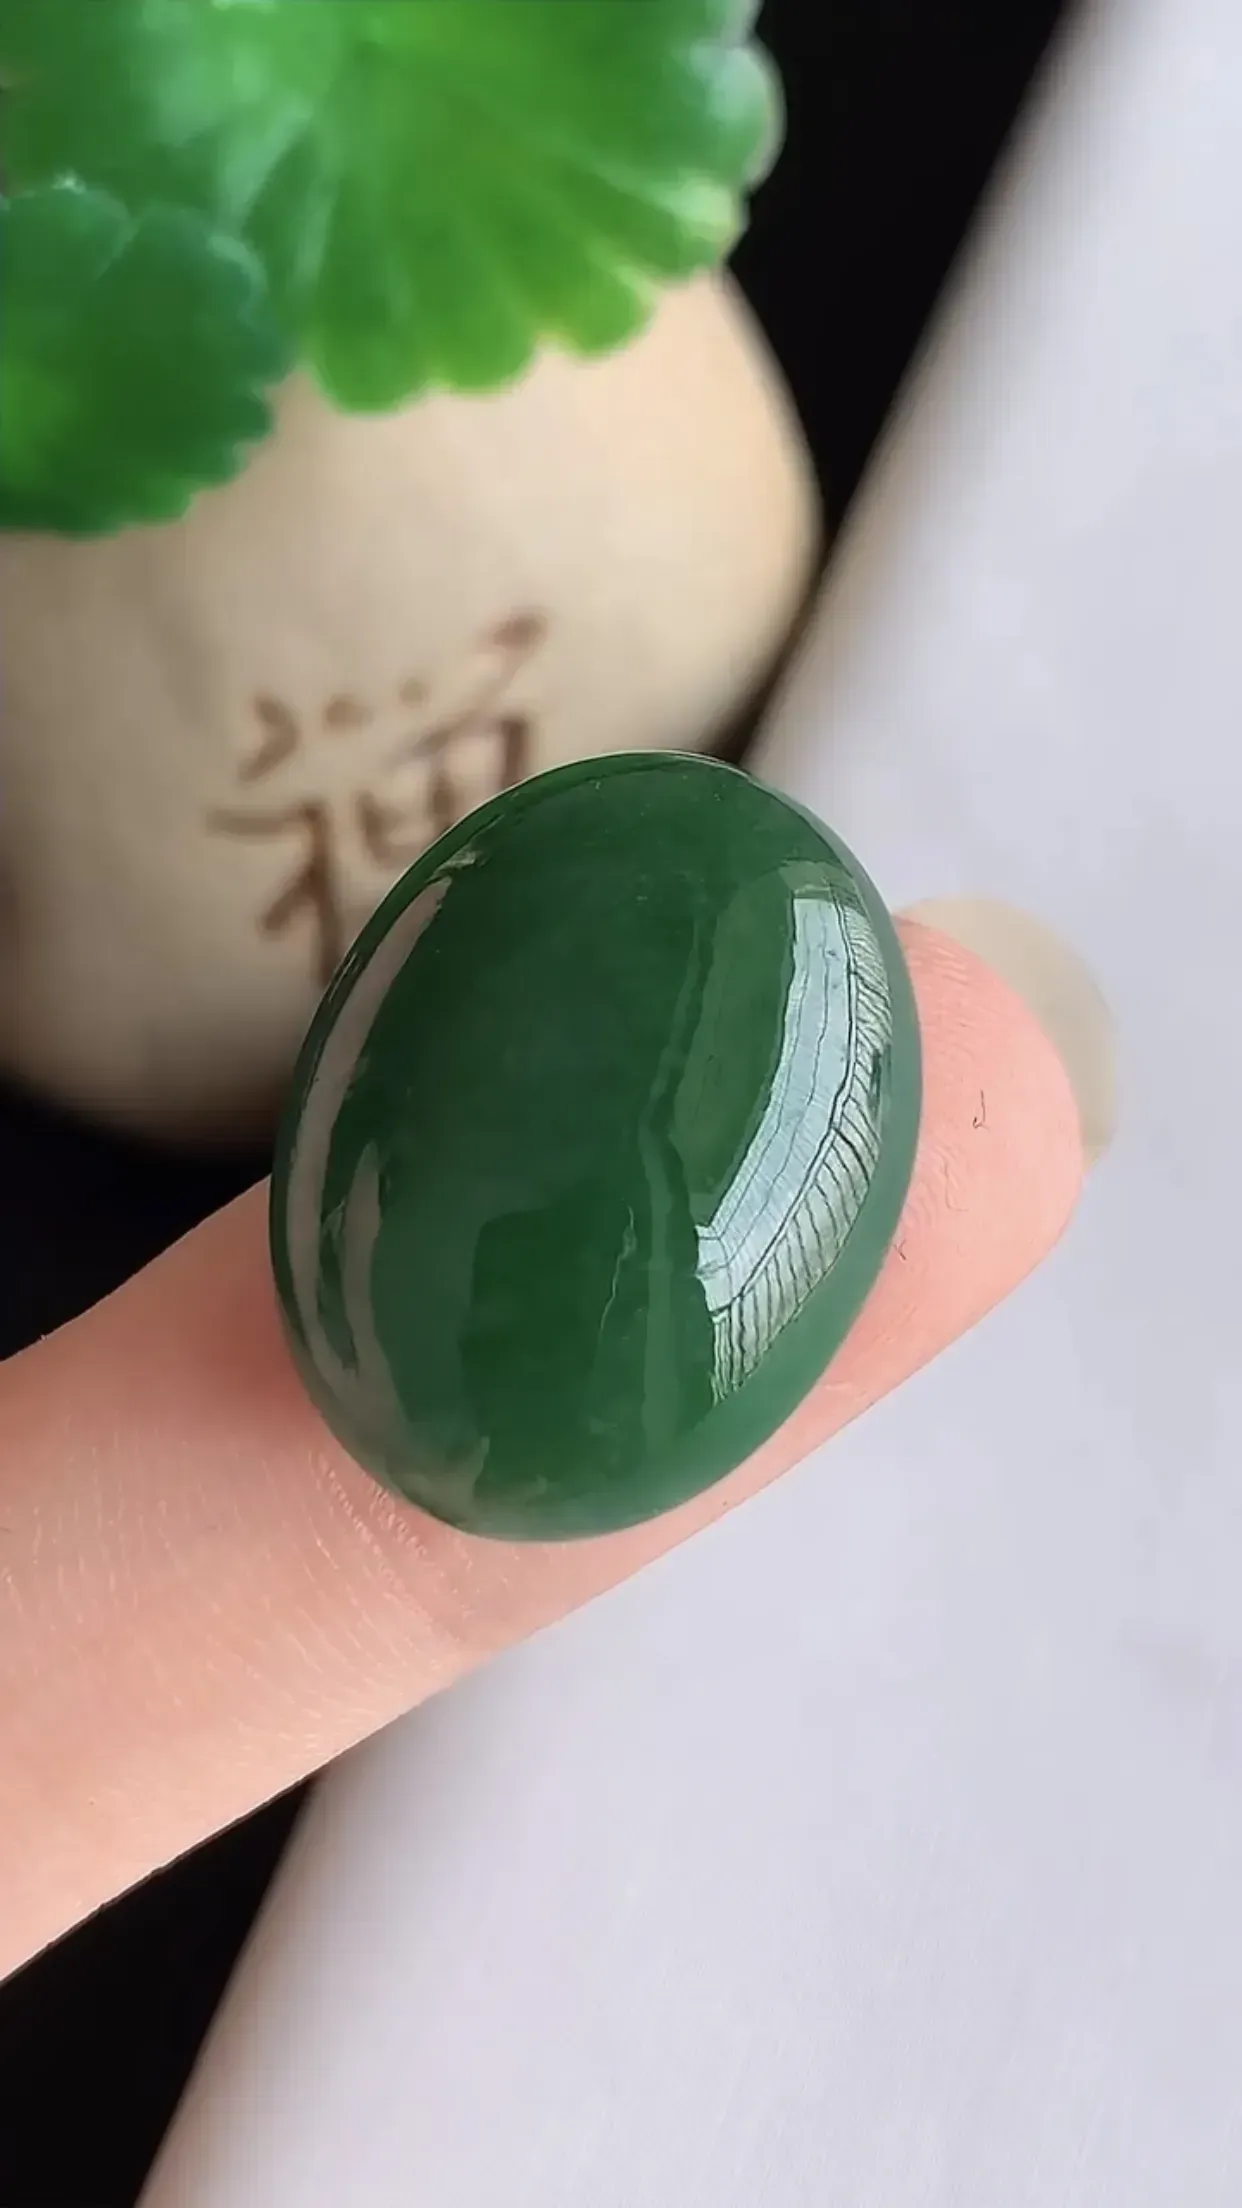 天然翡翠A货 老坑料起胶冰润满绿蛋面 玉质细腻 色泽鲜艳  种水好 镶嵌效果佳 尺寸21×6×7mm